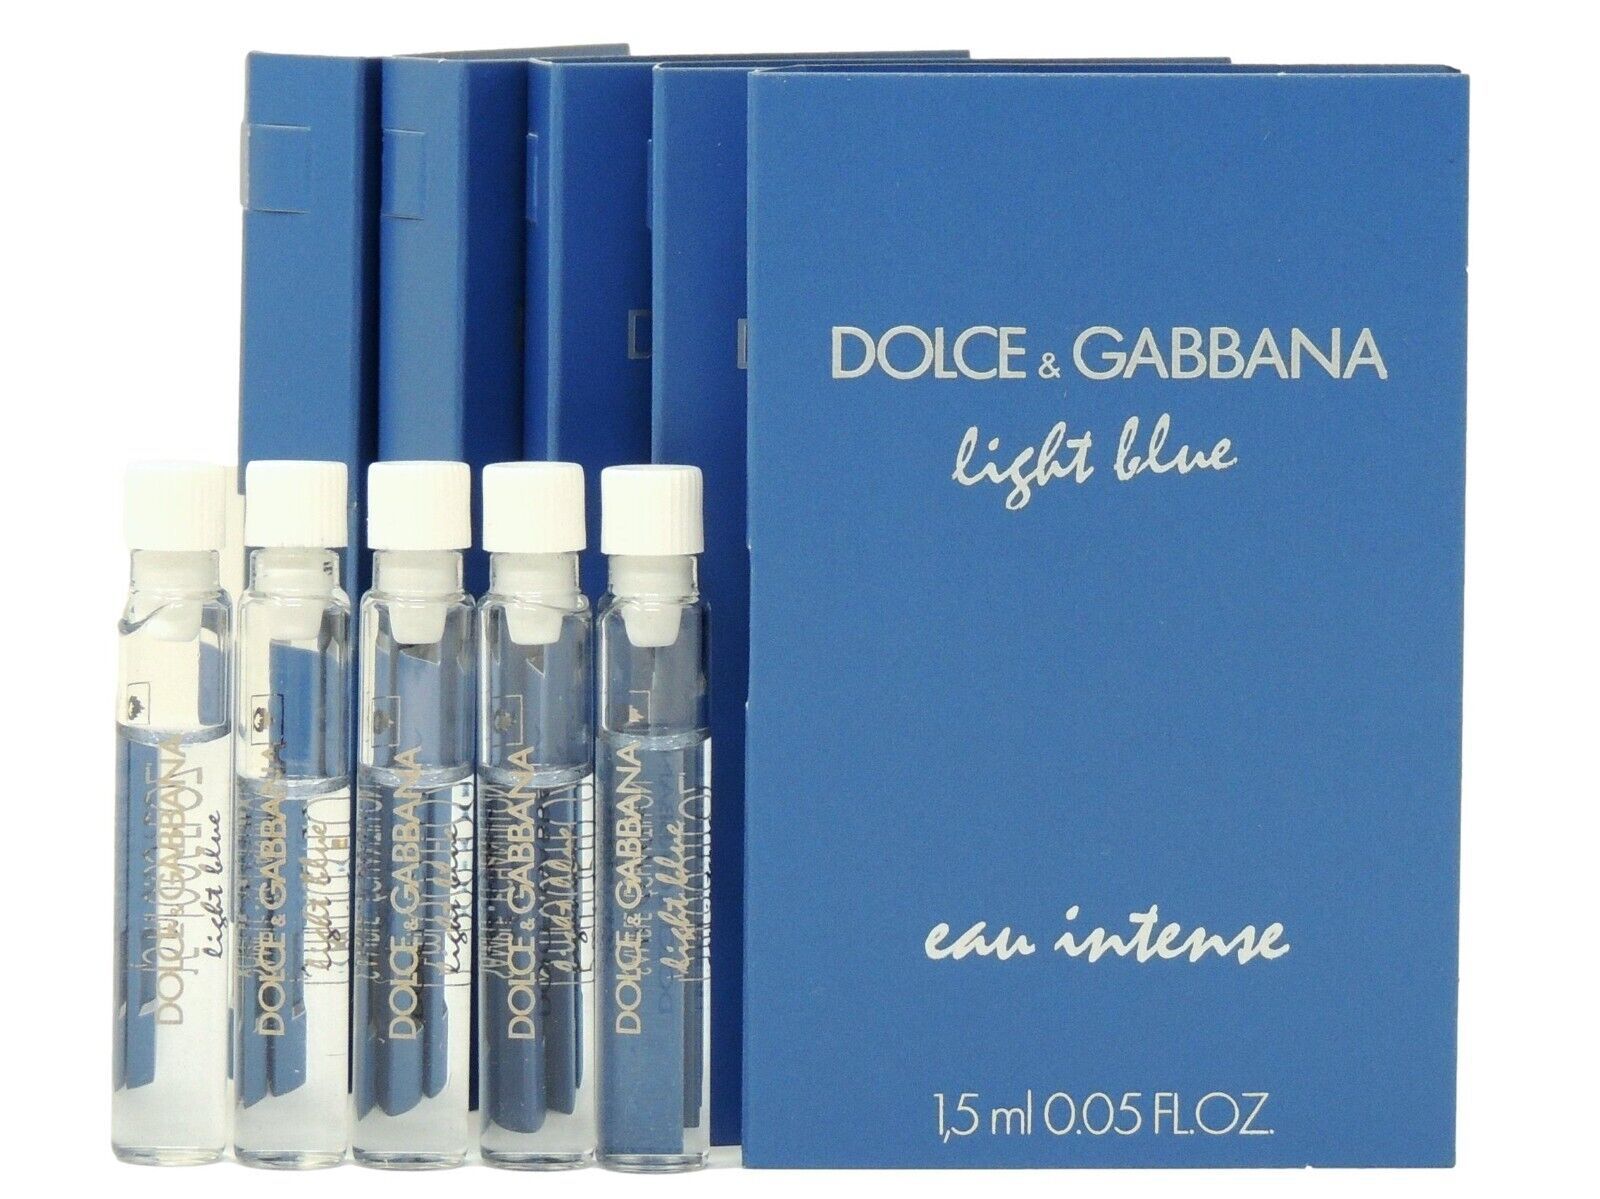 D&G DOLCE & GABBANA LIGHT BLUE EAU INTENSE WOMEN 1.5ml .05oz x 5 PERFUME